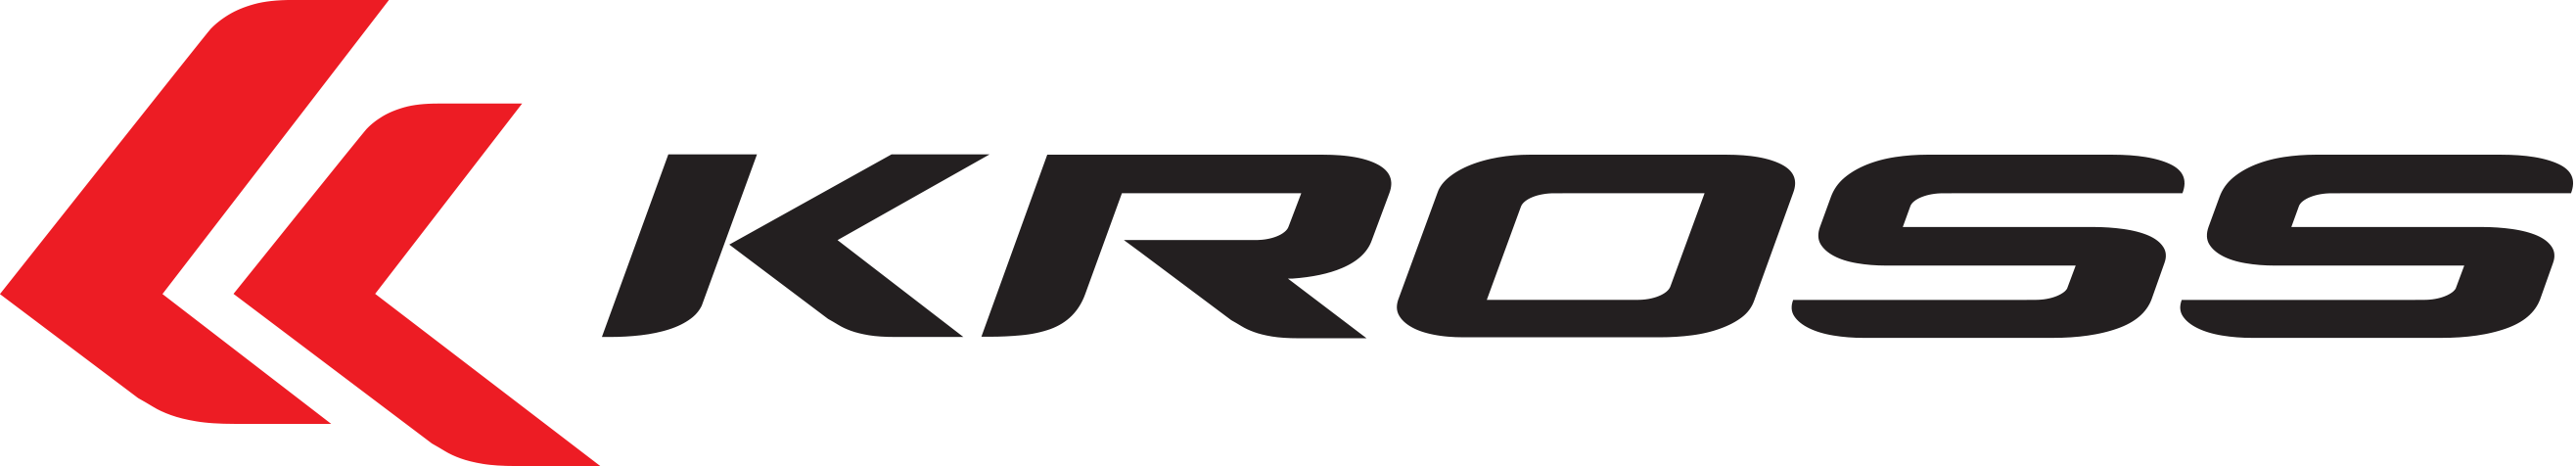 Logo Kross